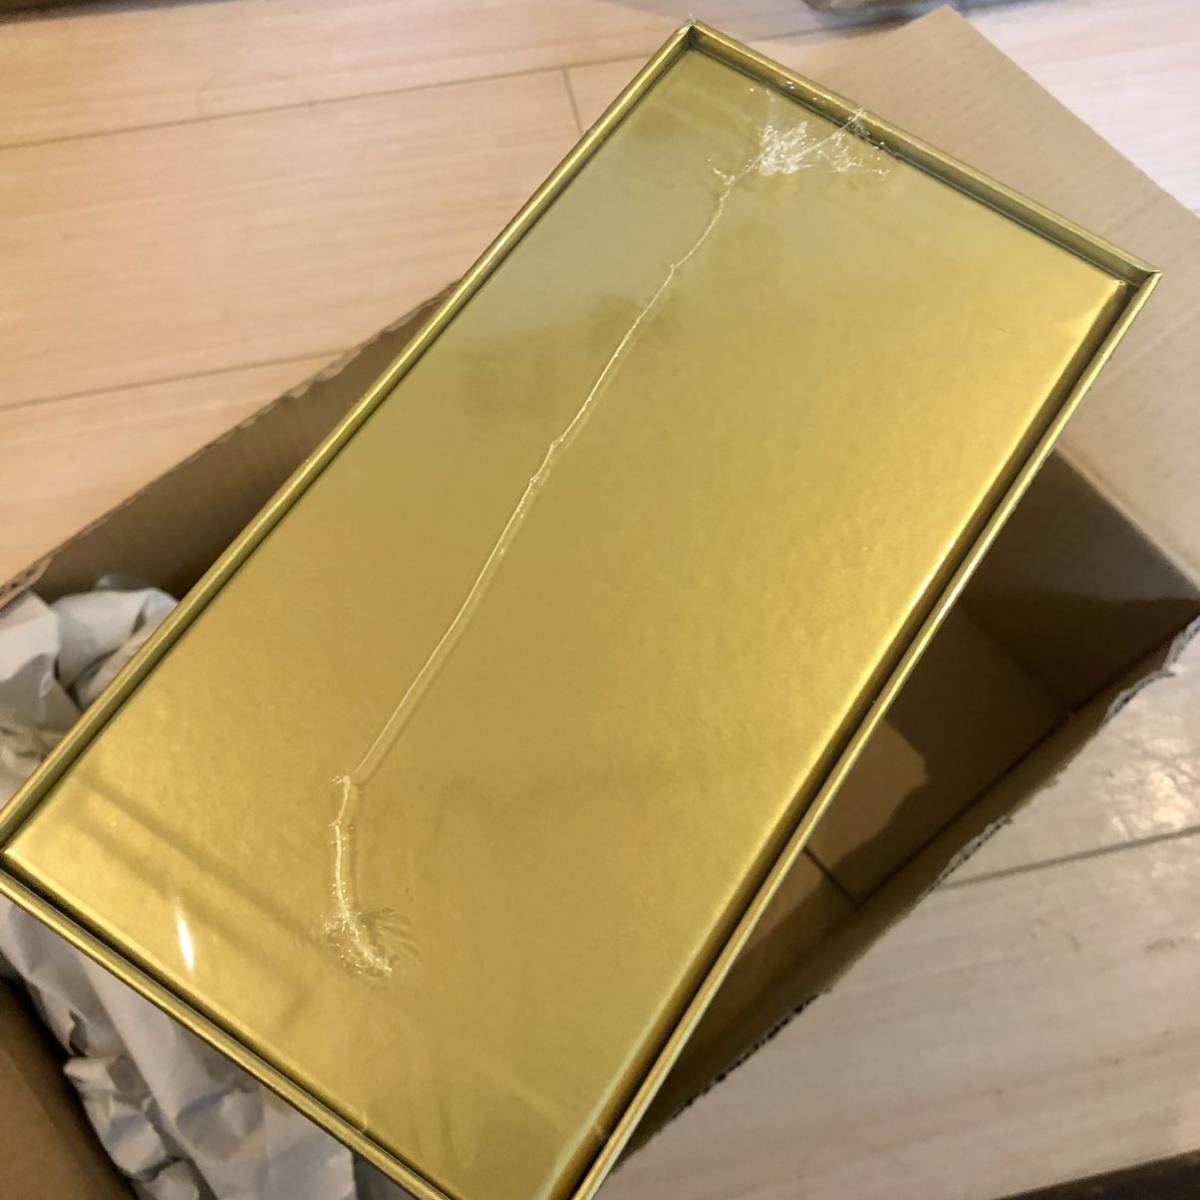 新品・当店売れ筋 25thANNIVERSARY GOLDEN BOX Amazon受注生産版 ポケモンカードゲーム